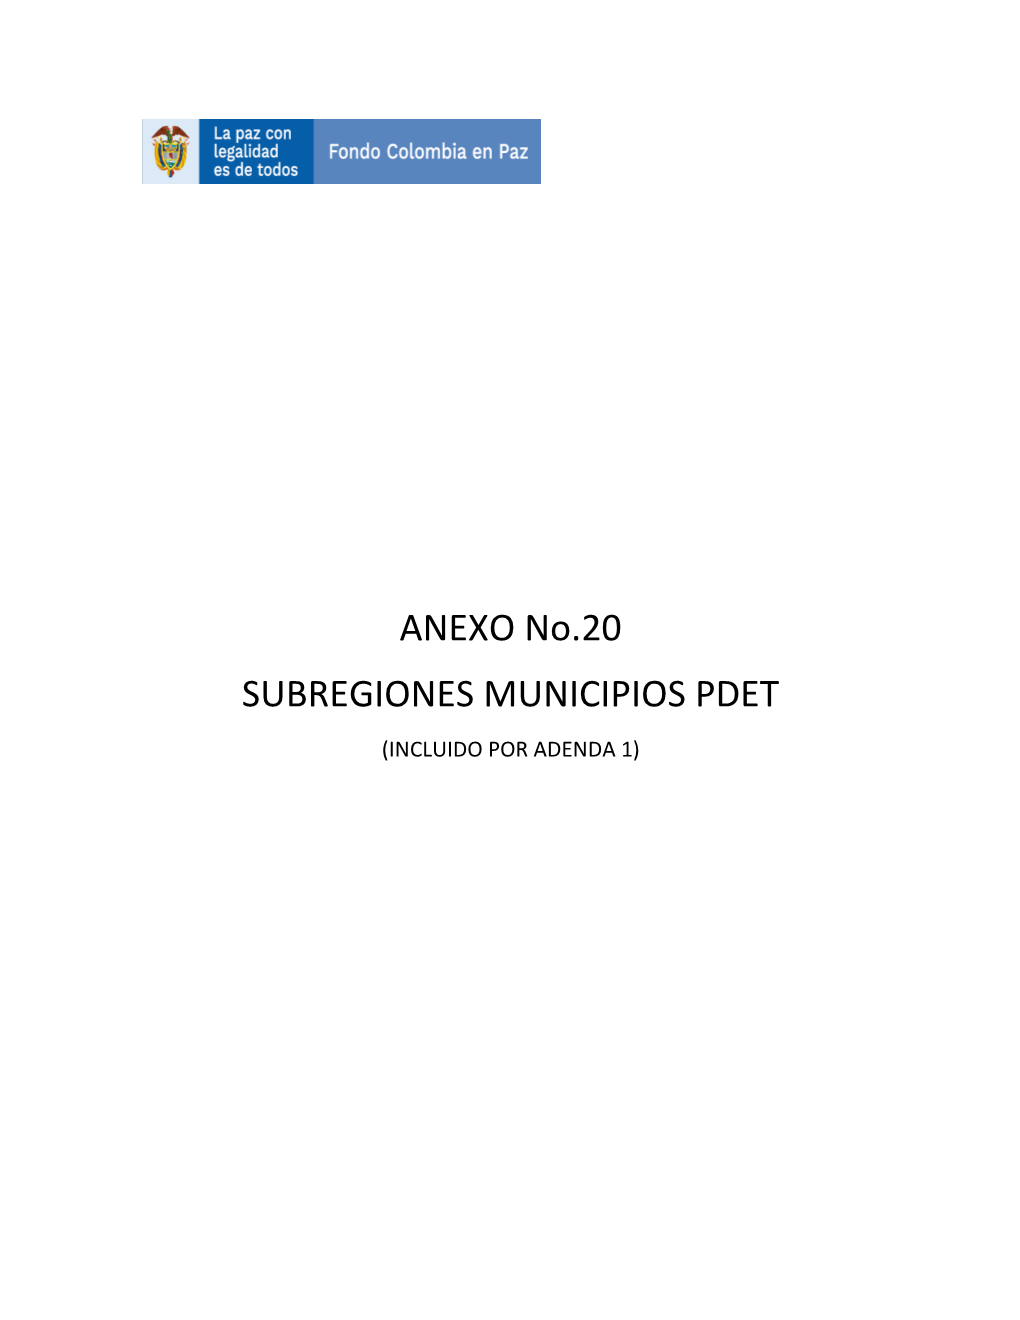 ANEXO No.20 SUBREGIONES MUNICIPIOS PDET (INCLUIDO POR ADENDA 1) SUBREGIONES Y MUNICIPIOS PDET Jun-21